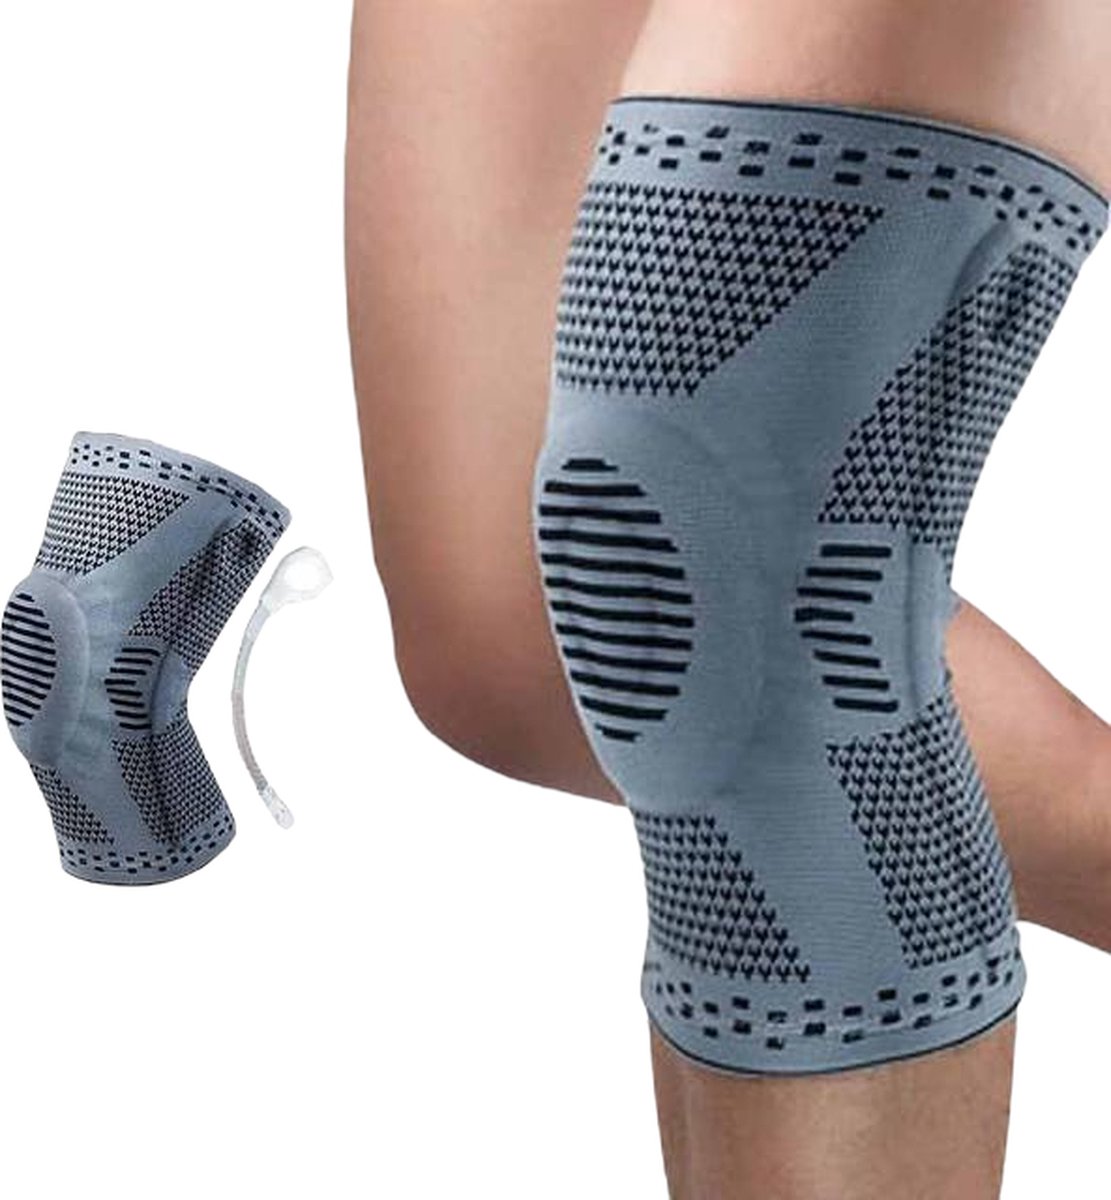 Chibaa - Knie band - Grijs - Maat: Medium - Unisex - Knie Versterking - Orthopedische kniebrace voor kruisband - Knieband voor meniscus - Kniebeschermer - Patella - Compressie kniebandage blessure - Sporten - Bescherming